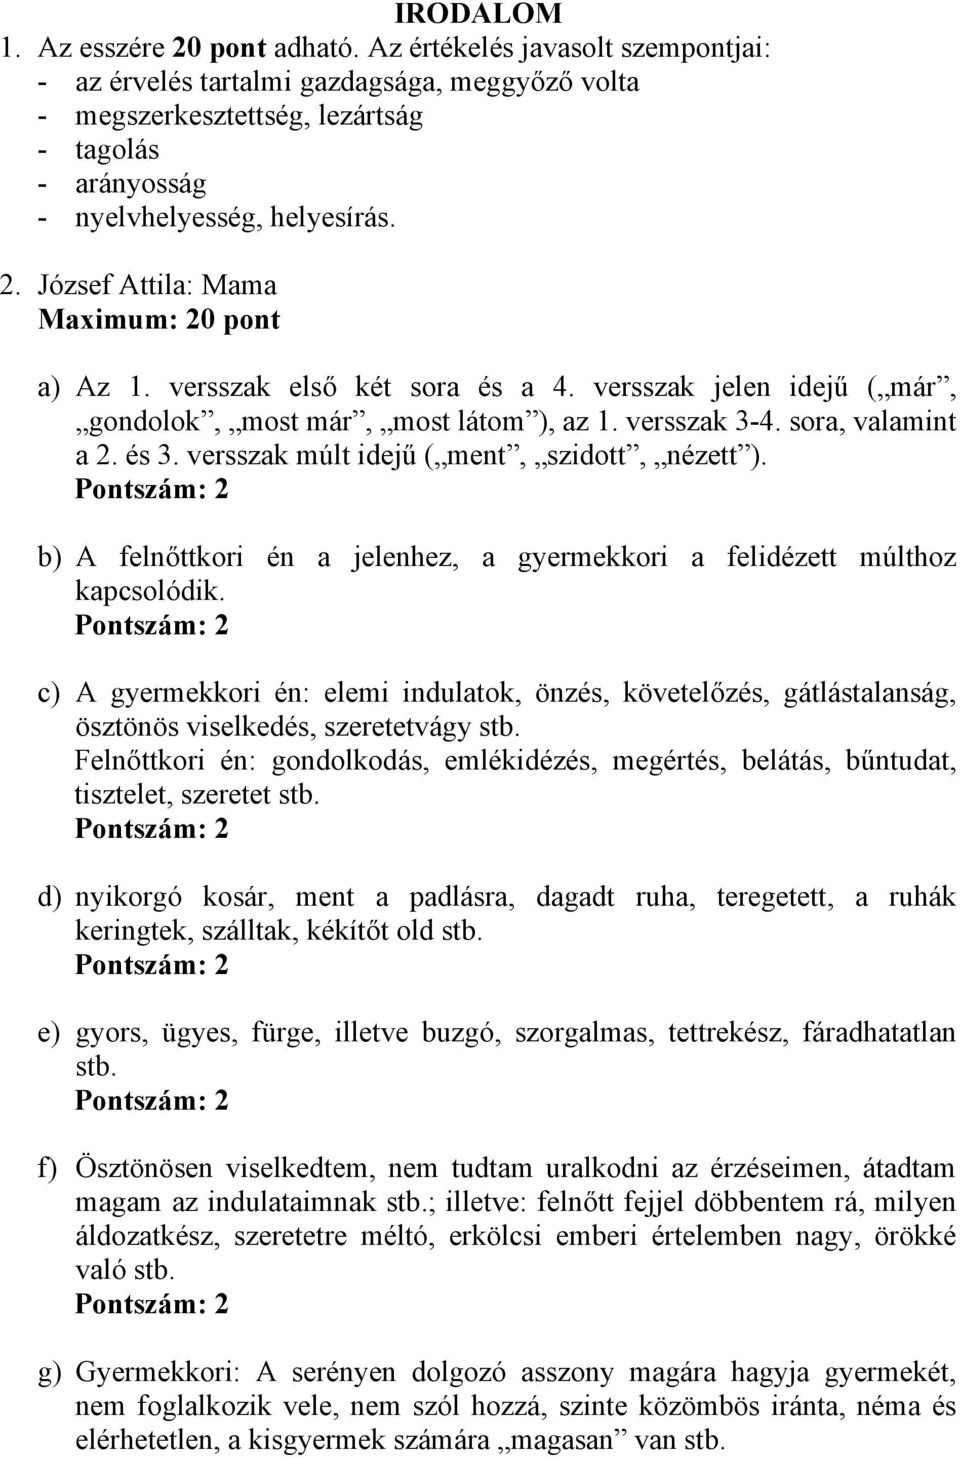 József Attila: Mama Maximum: 20 pont a) Az 1. versszak első két sora és a 4. versszak jelen idejű ( már, gondolok, most már, most látom ), az 1. versszak 3-4. sora, valamint a 2. és 3.